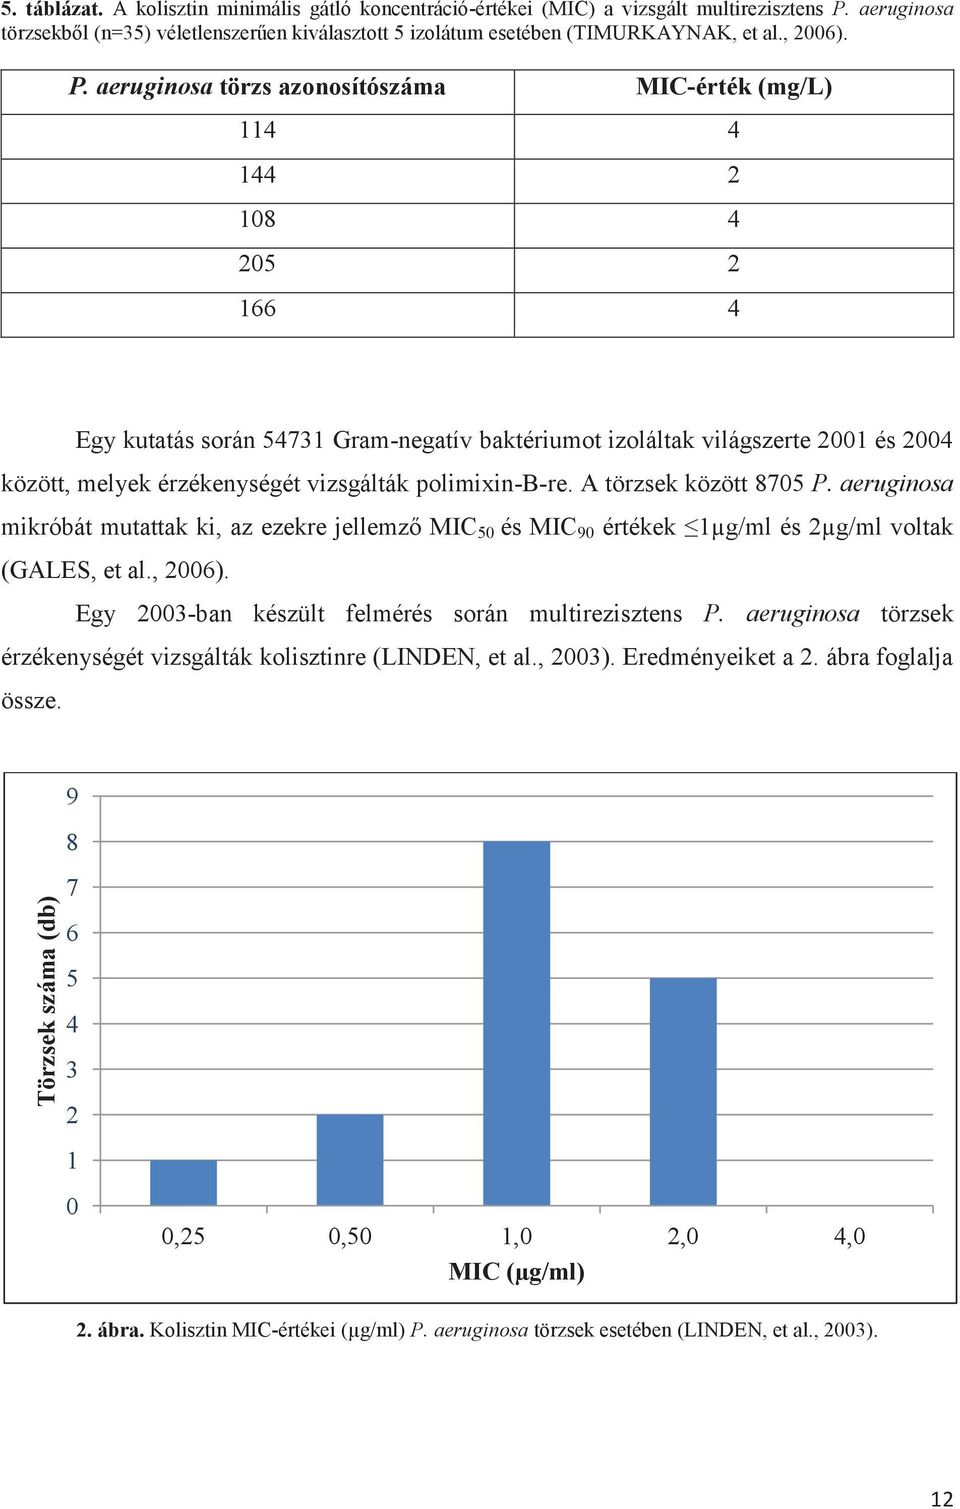 aeruginosa törzs azonosítószáma MIC-érték (mg/l) 114 4 144 2 108 4 205 2 166 4 Egy kutatás során 54731 Gram-negatív baktériumot izoláltak világszerte 2001 és 2004 között, melyek érzékenységét